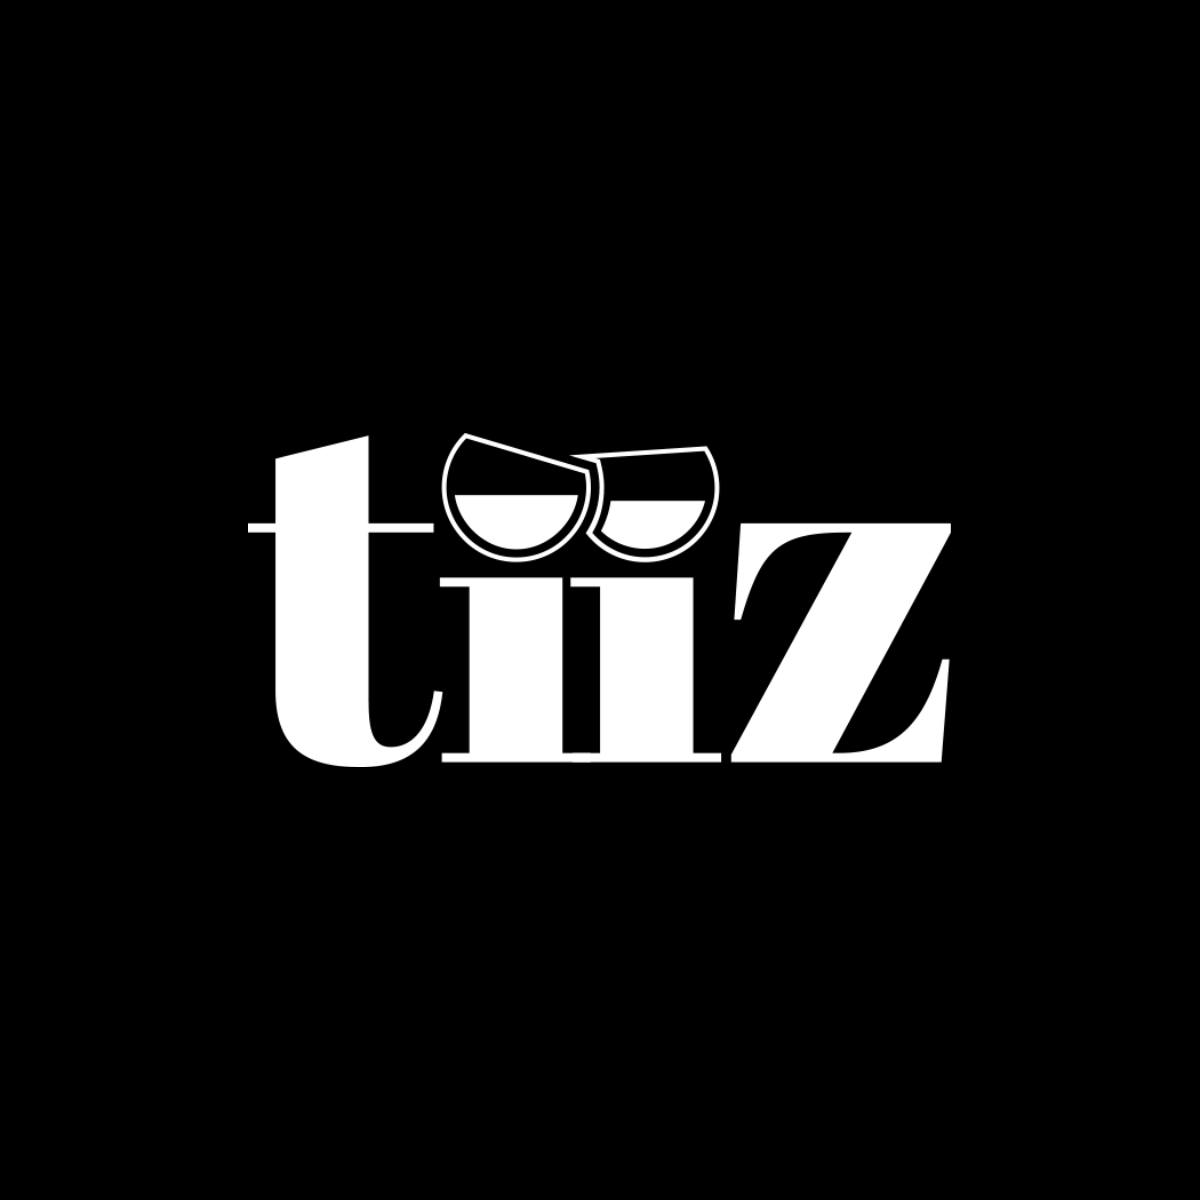 Tiiz est une start-up Bordelaise qui propose la livraison de spiritueux, softs, vins et bières à domicile la nuit.